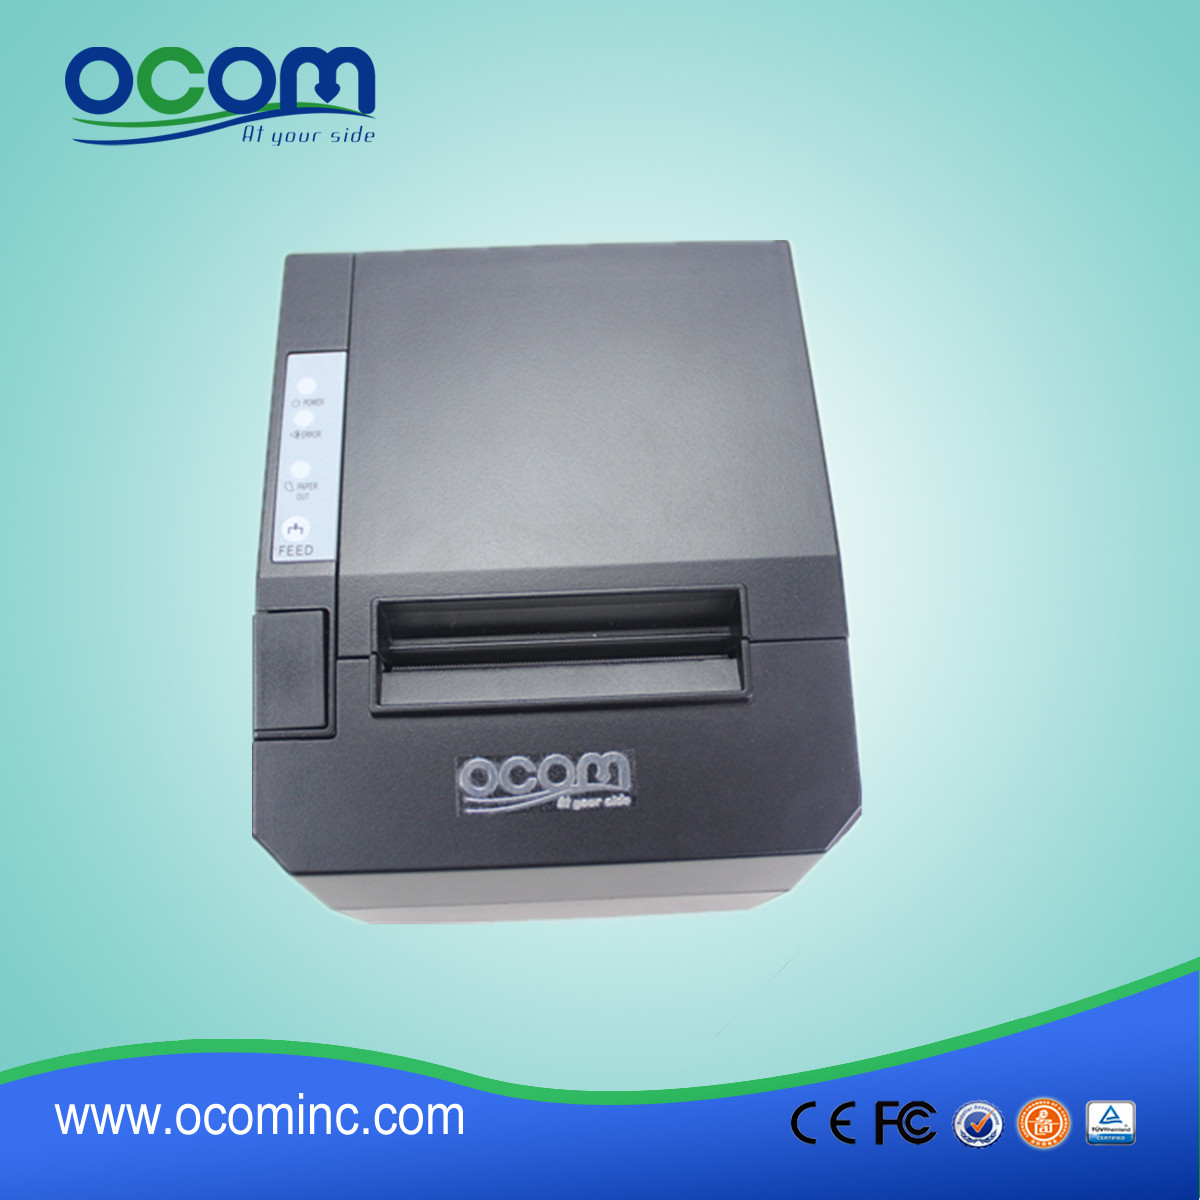 2015年最新的80毫米WiFi和蓝牙可选的热敏收据打印机OCPP-88A